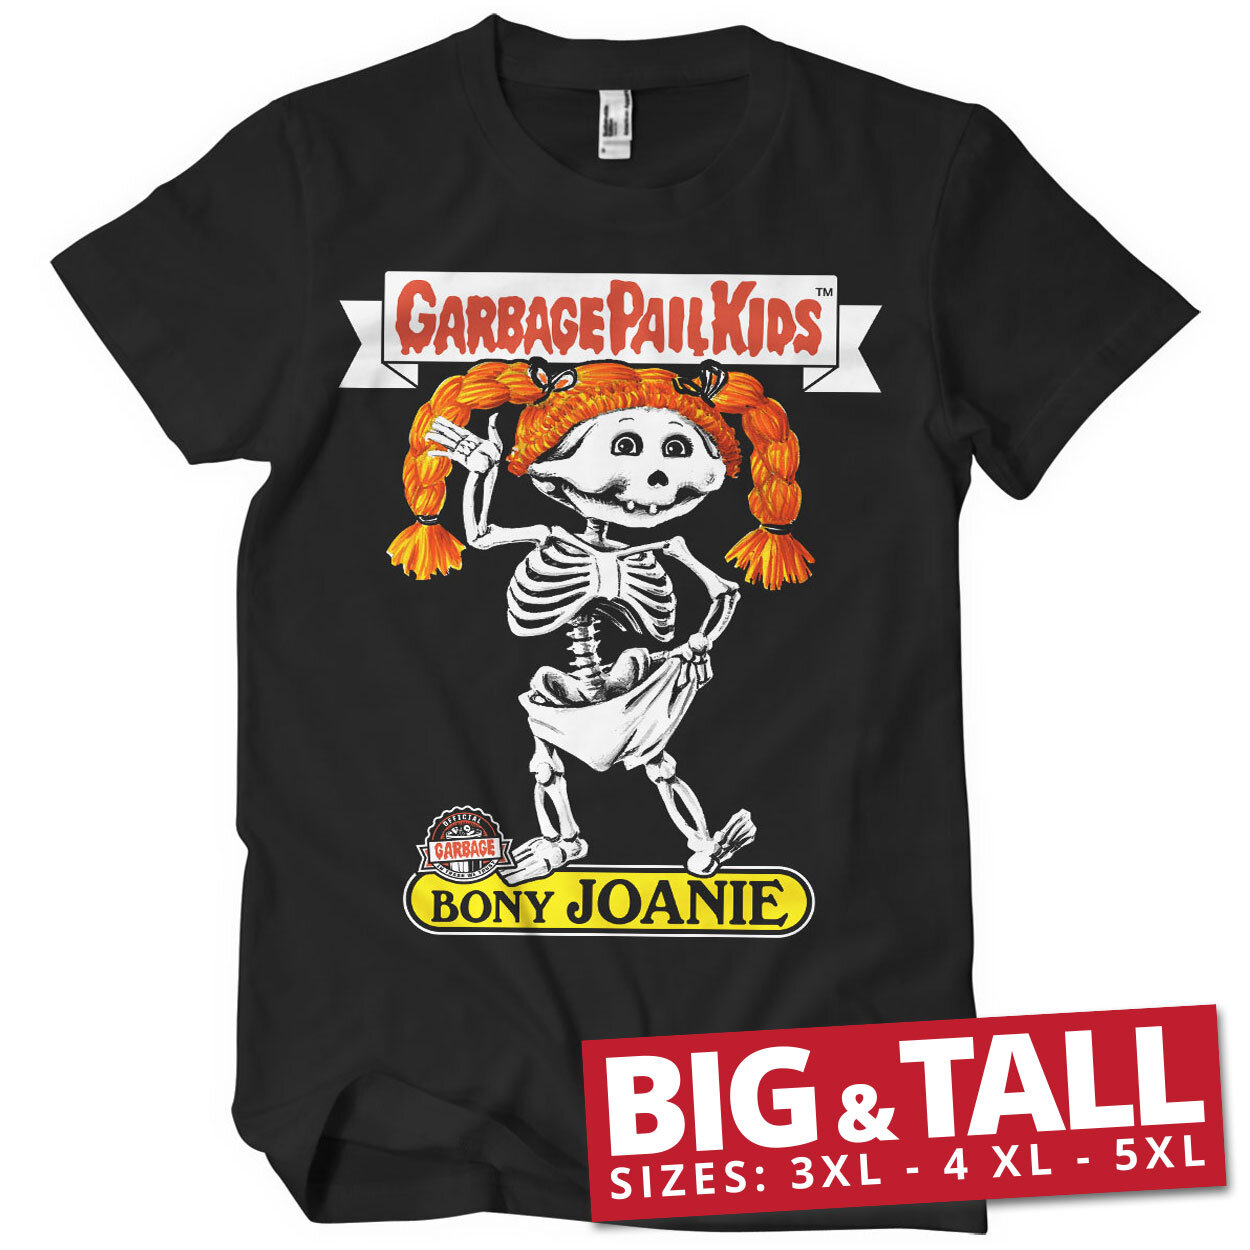 Bony Joanie Big & Tall T-Shirt